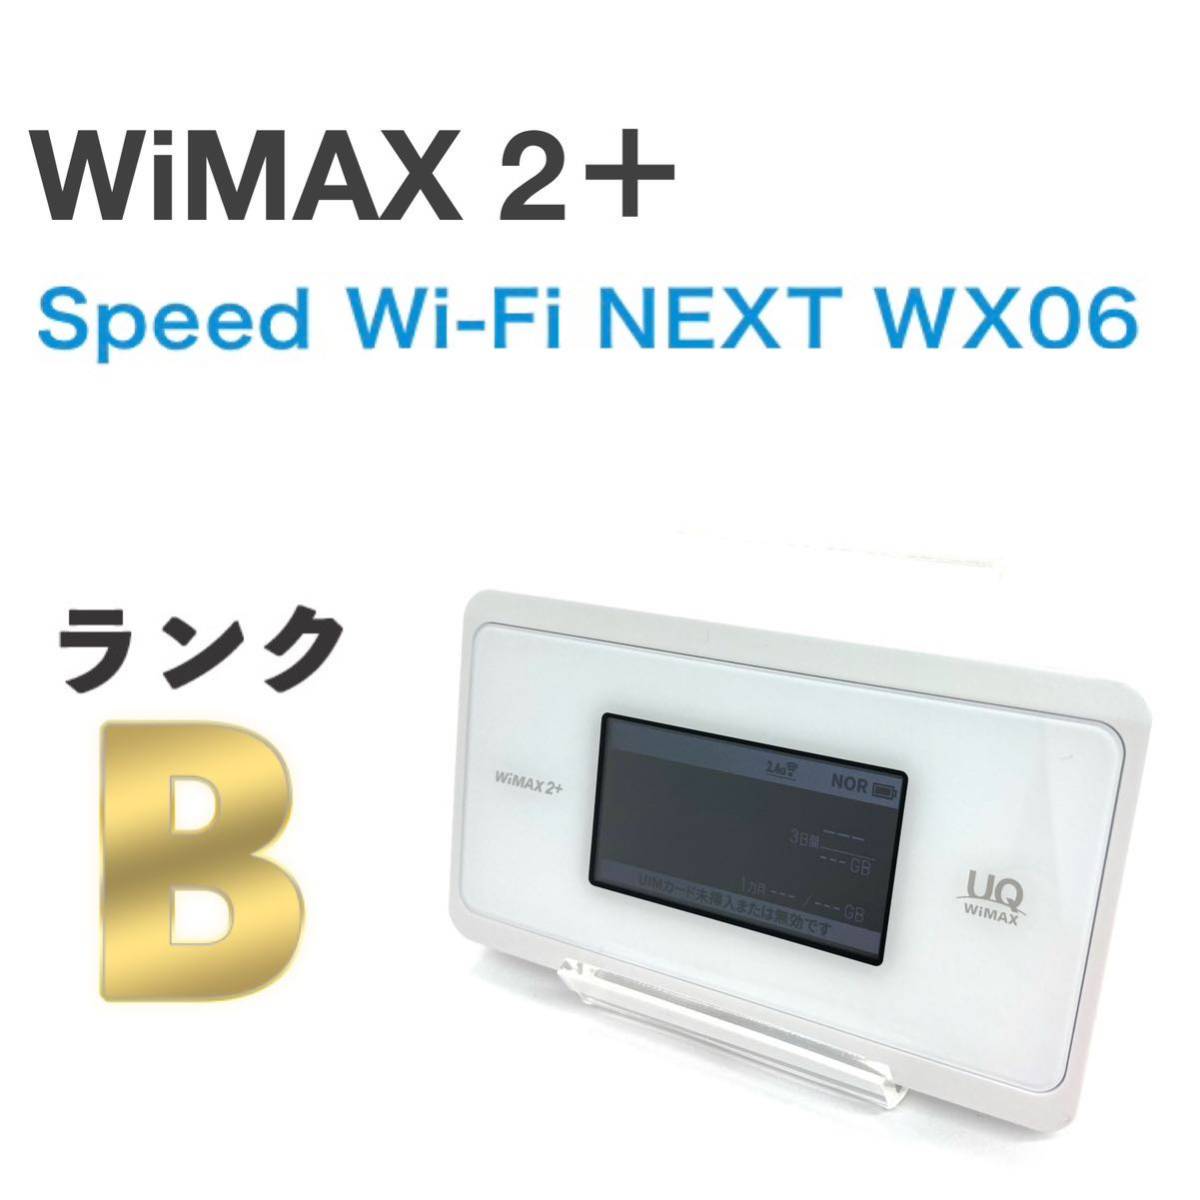 NEC WX06 UQ ピュアホワイト - ルーター・ネットワーク機器